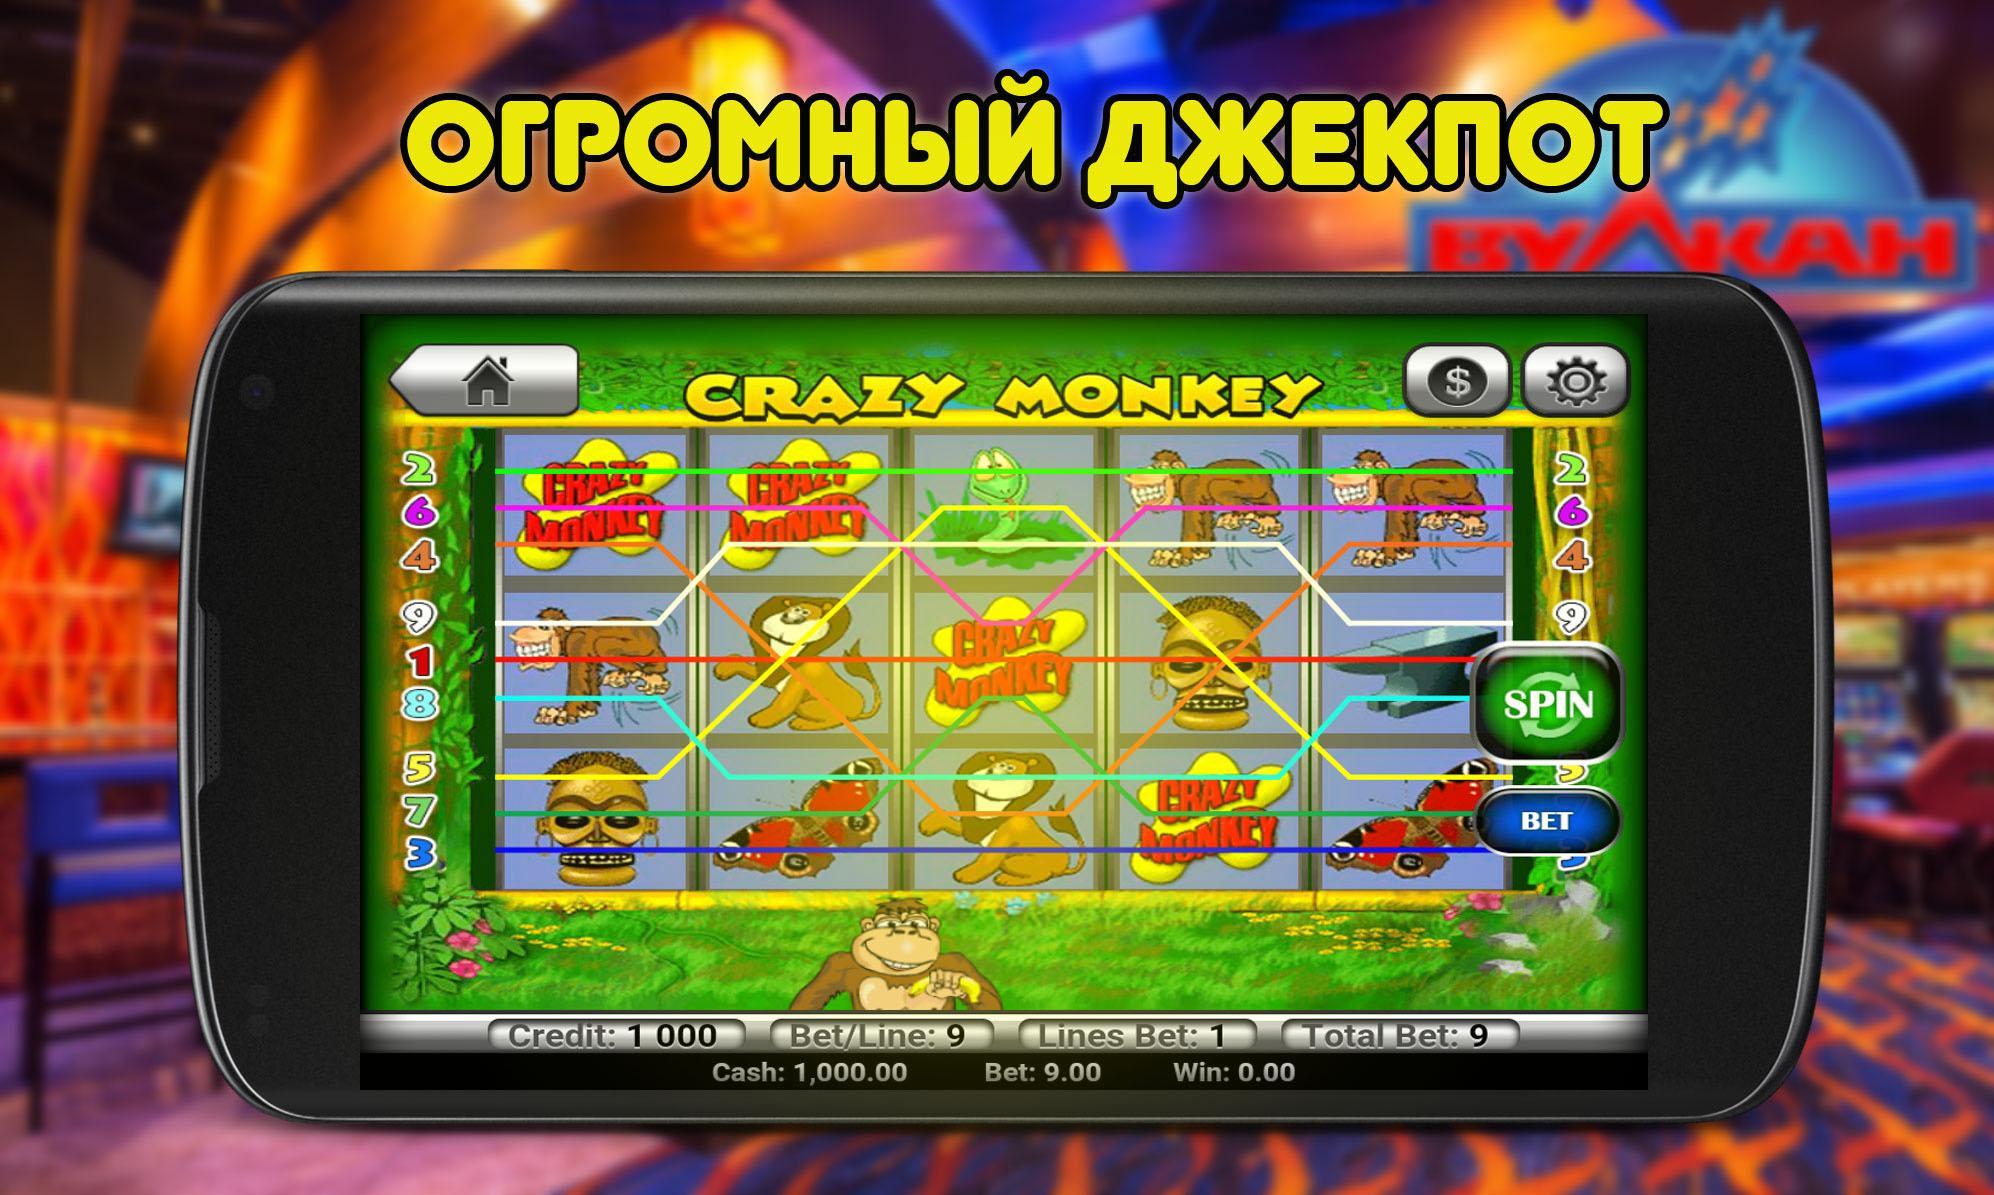 Семерка игровые автоматы slots semerki org ru. Слот три семерки. Линия 7 на андроид. Реклама в телефоне игра три семерки.